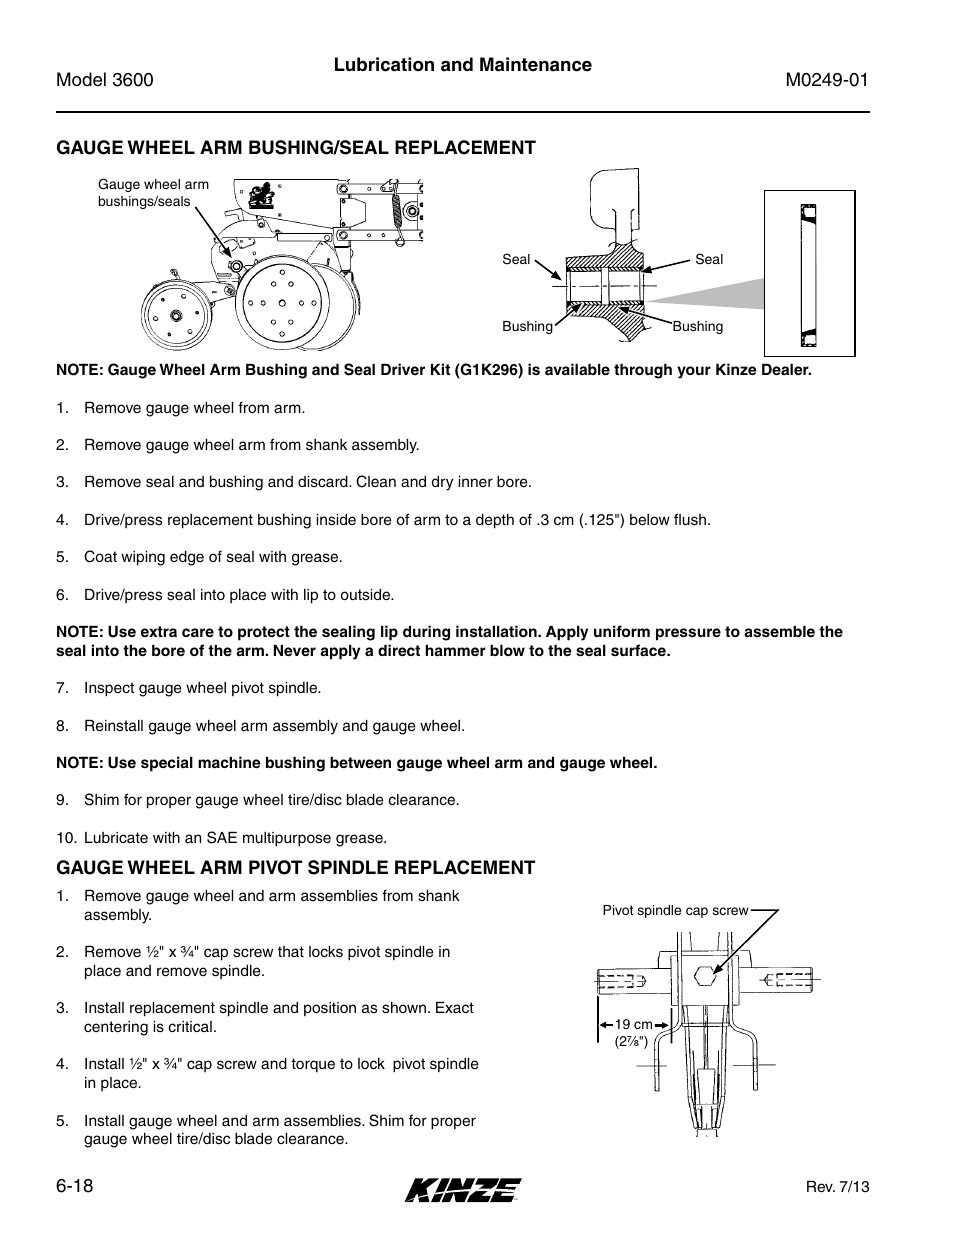 Gauge wheel arm bushing/seal replacement, Gauge wheel arm pivot spindle replacement, Gauge wheel arm bushing/seal replacement -18 | Gauge wheel arm pivot spindle replacement -18 | Kinze 3600 Lift and Rotate Planter (70 CM) Rev. 5/14 User Manual | Page 122 / 158